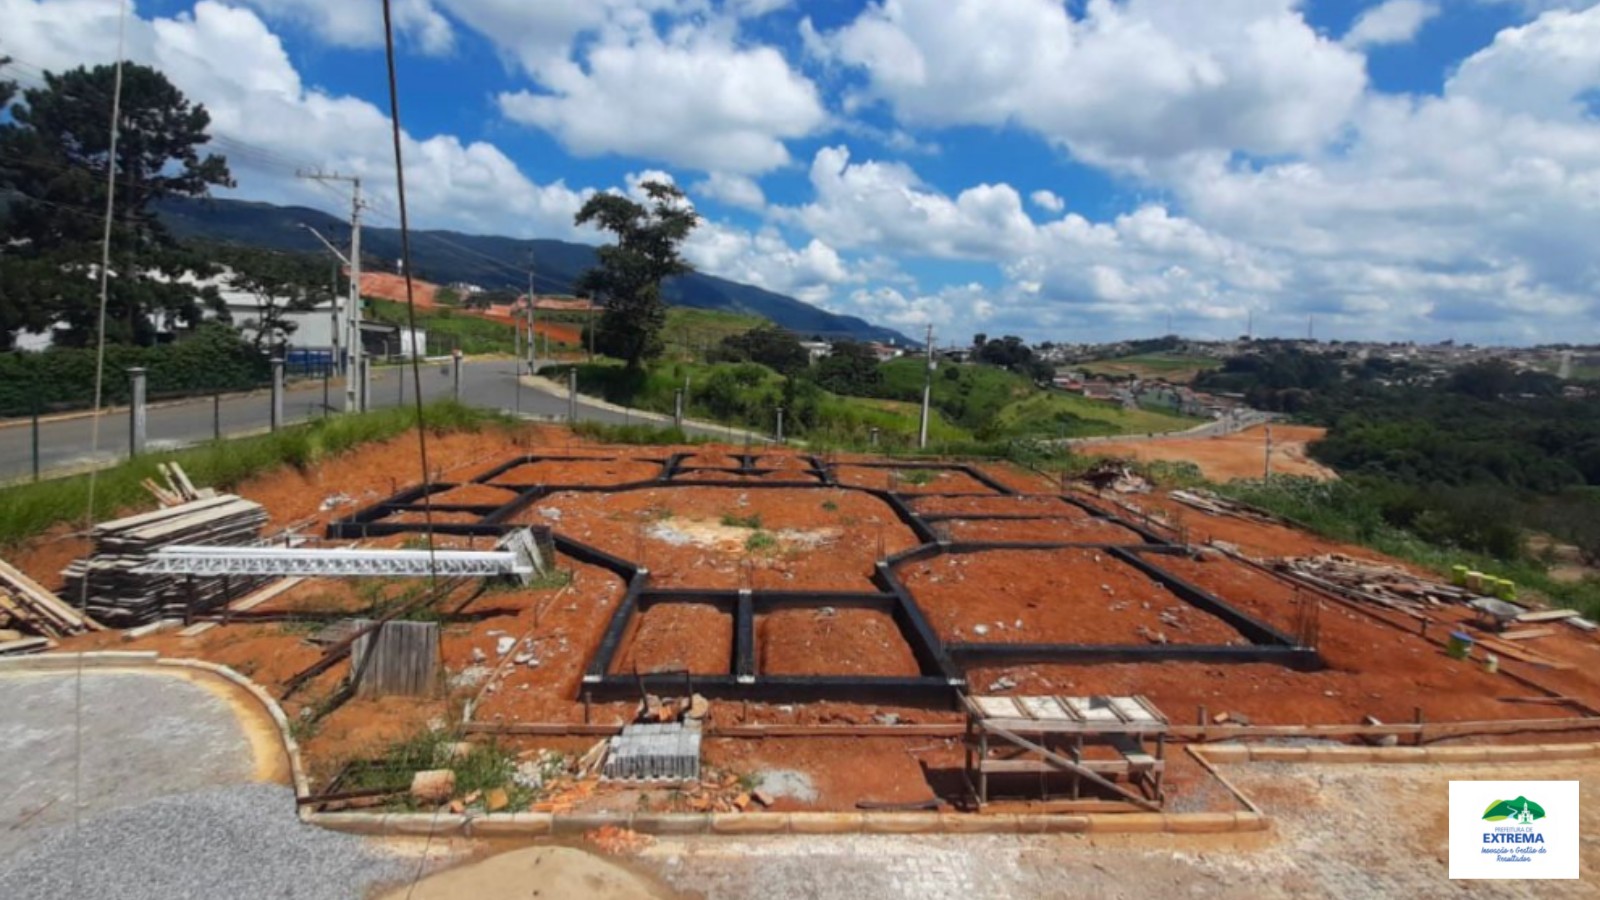 Obras de edificação do Cemitério Municipal “Parque Jardim” avançam em Extrema